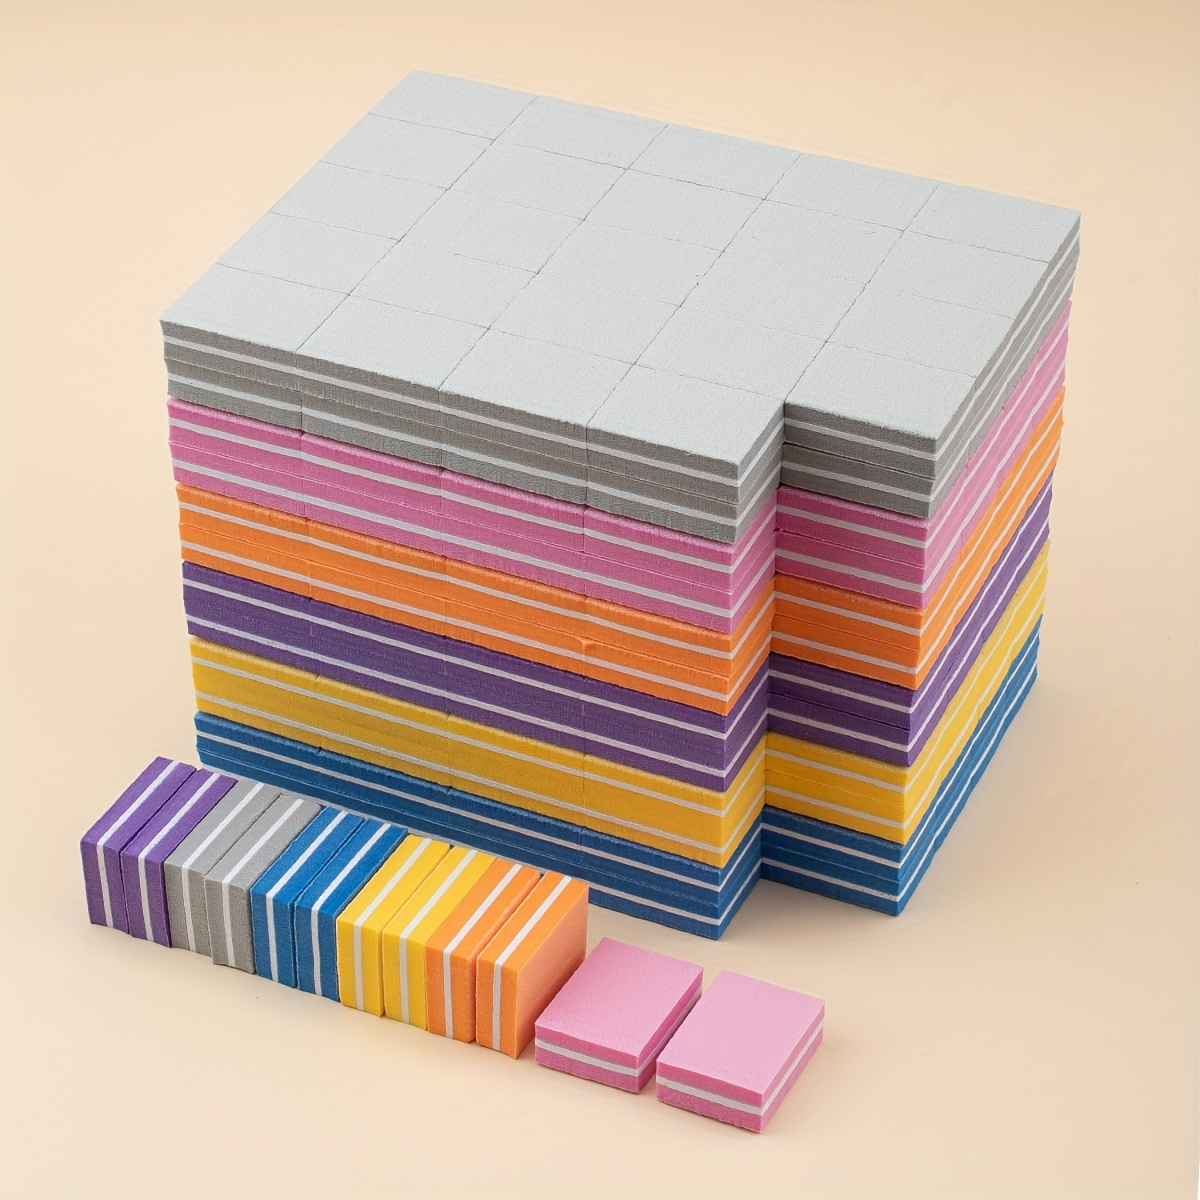 

50pcs Mini Nail File Buffer Polishing Blocks Kit, Nail File Blocks Buffer Colorful Sanding Files, Polishing Nail Art Care Tools